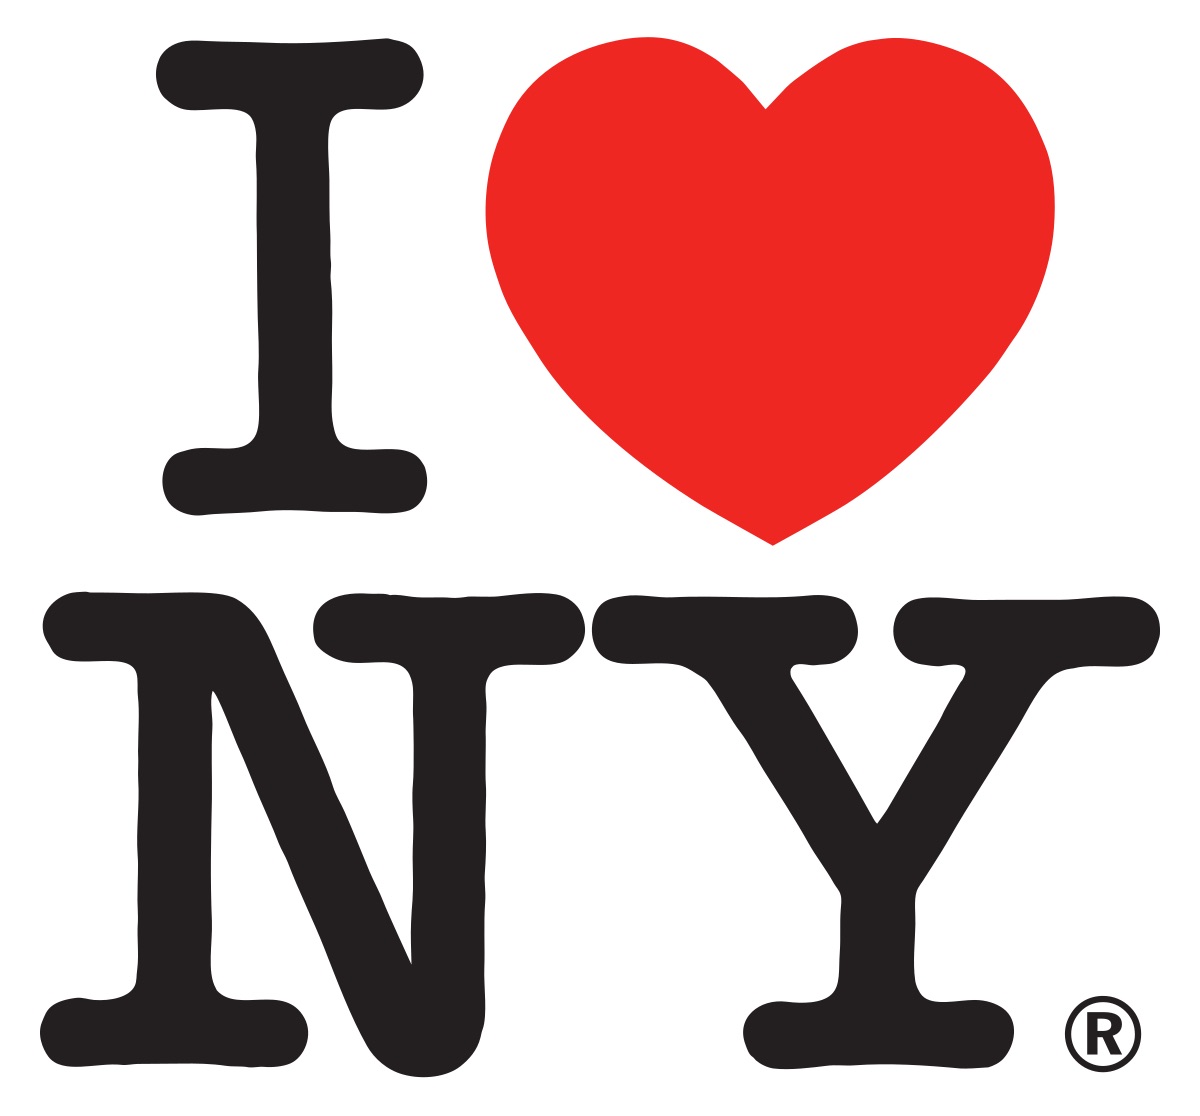 El Iogo de I Love New York fue realizado por Milton Glaser y fue totalmente pro bono, actuamente genera más de $ 30 millones de dólares al año.